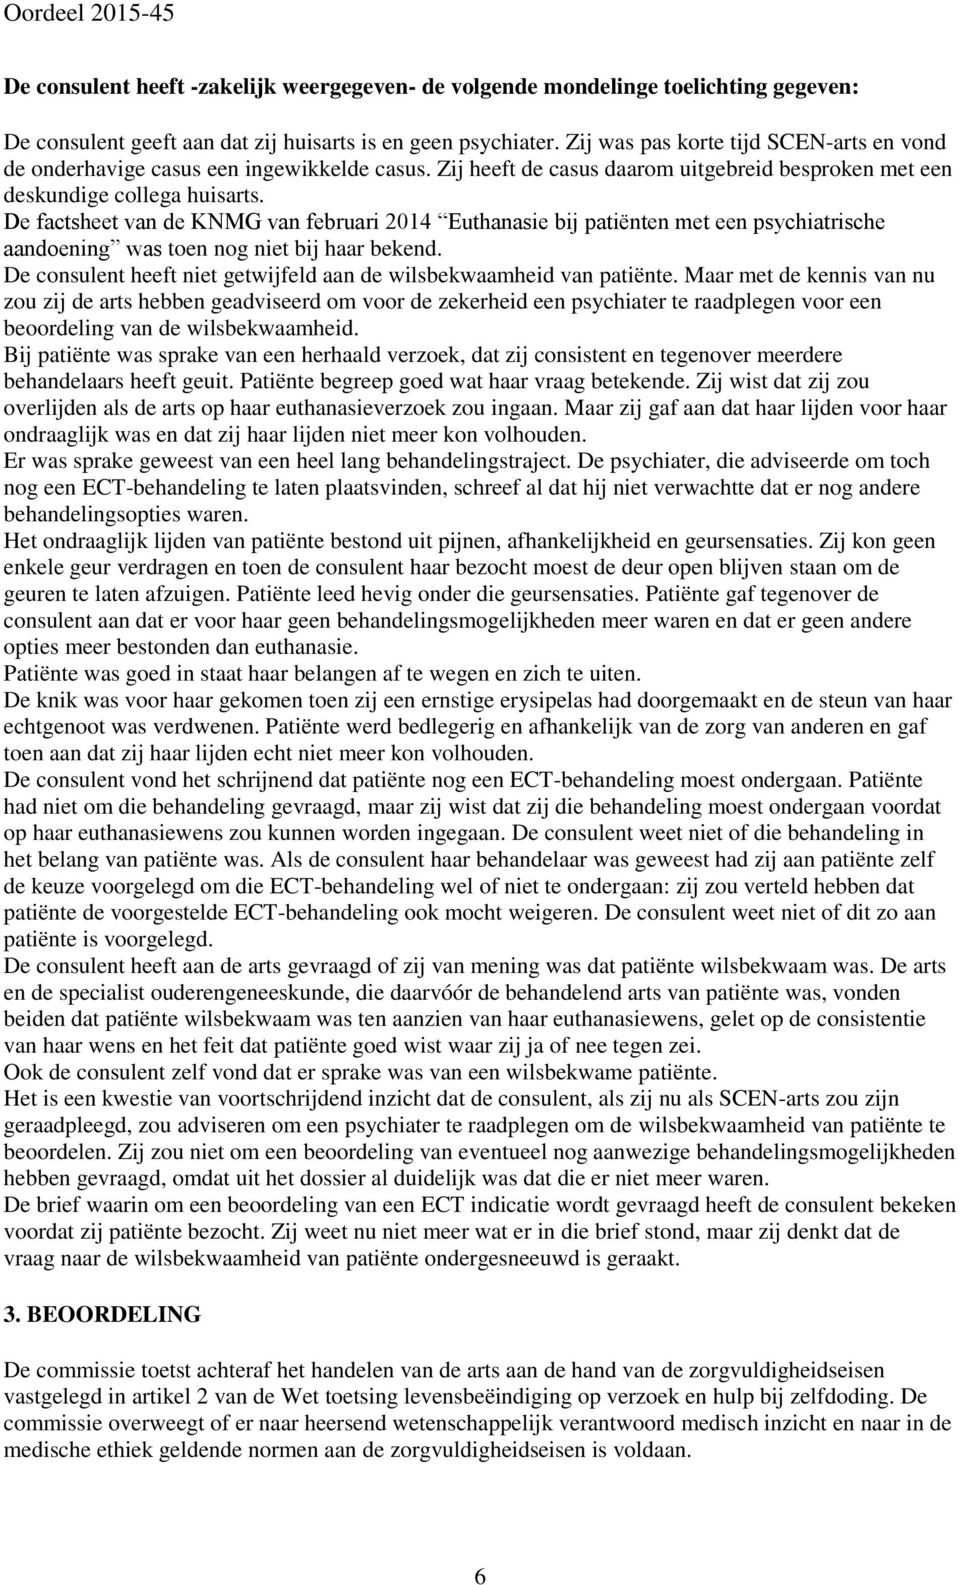 De factsheet van de KNMG van februari 2014 Euthanasie bij patiënten met een psychiatrische aandoening was toen nog niet bij haar bekend.